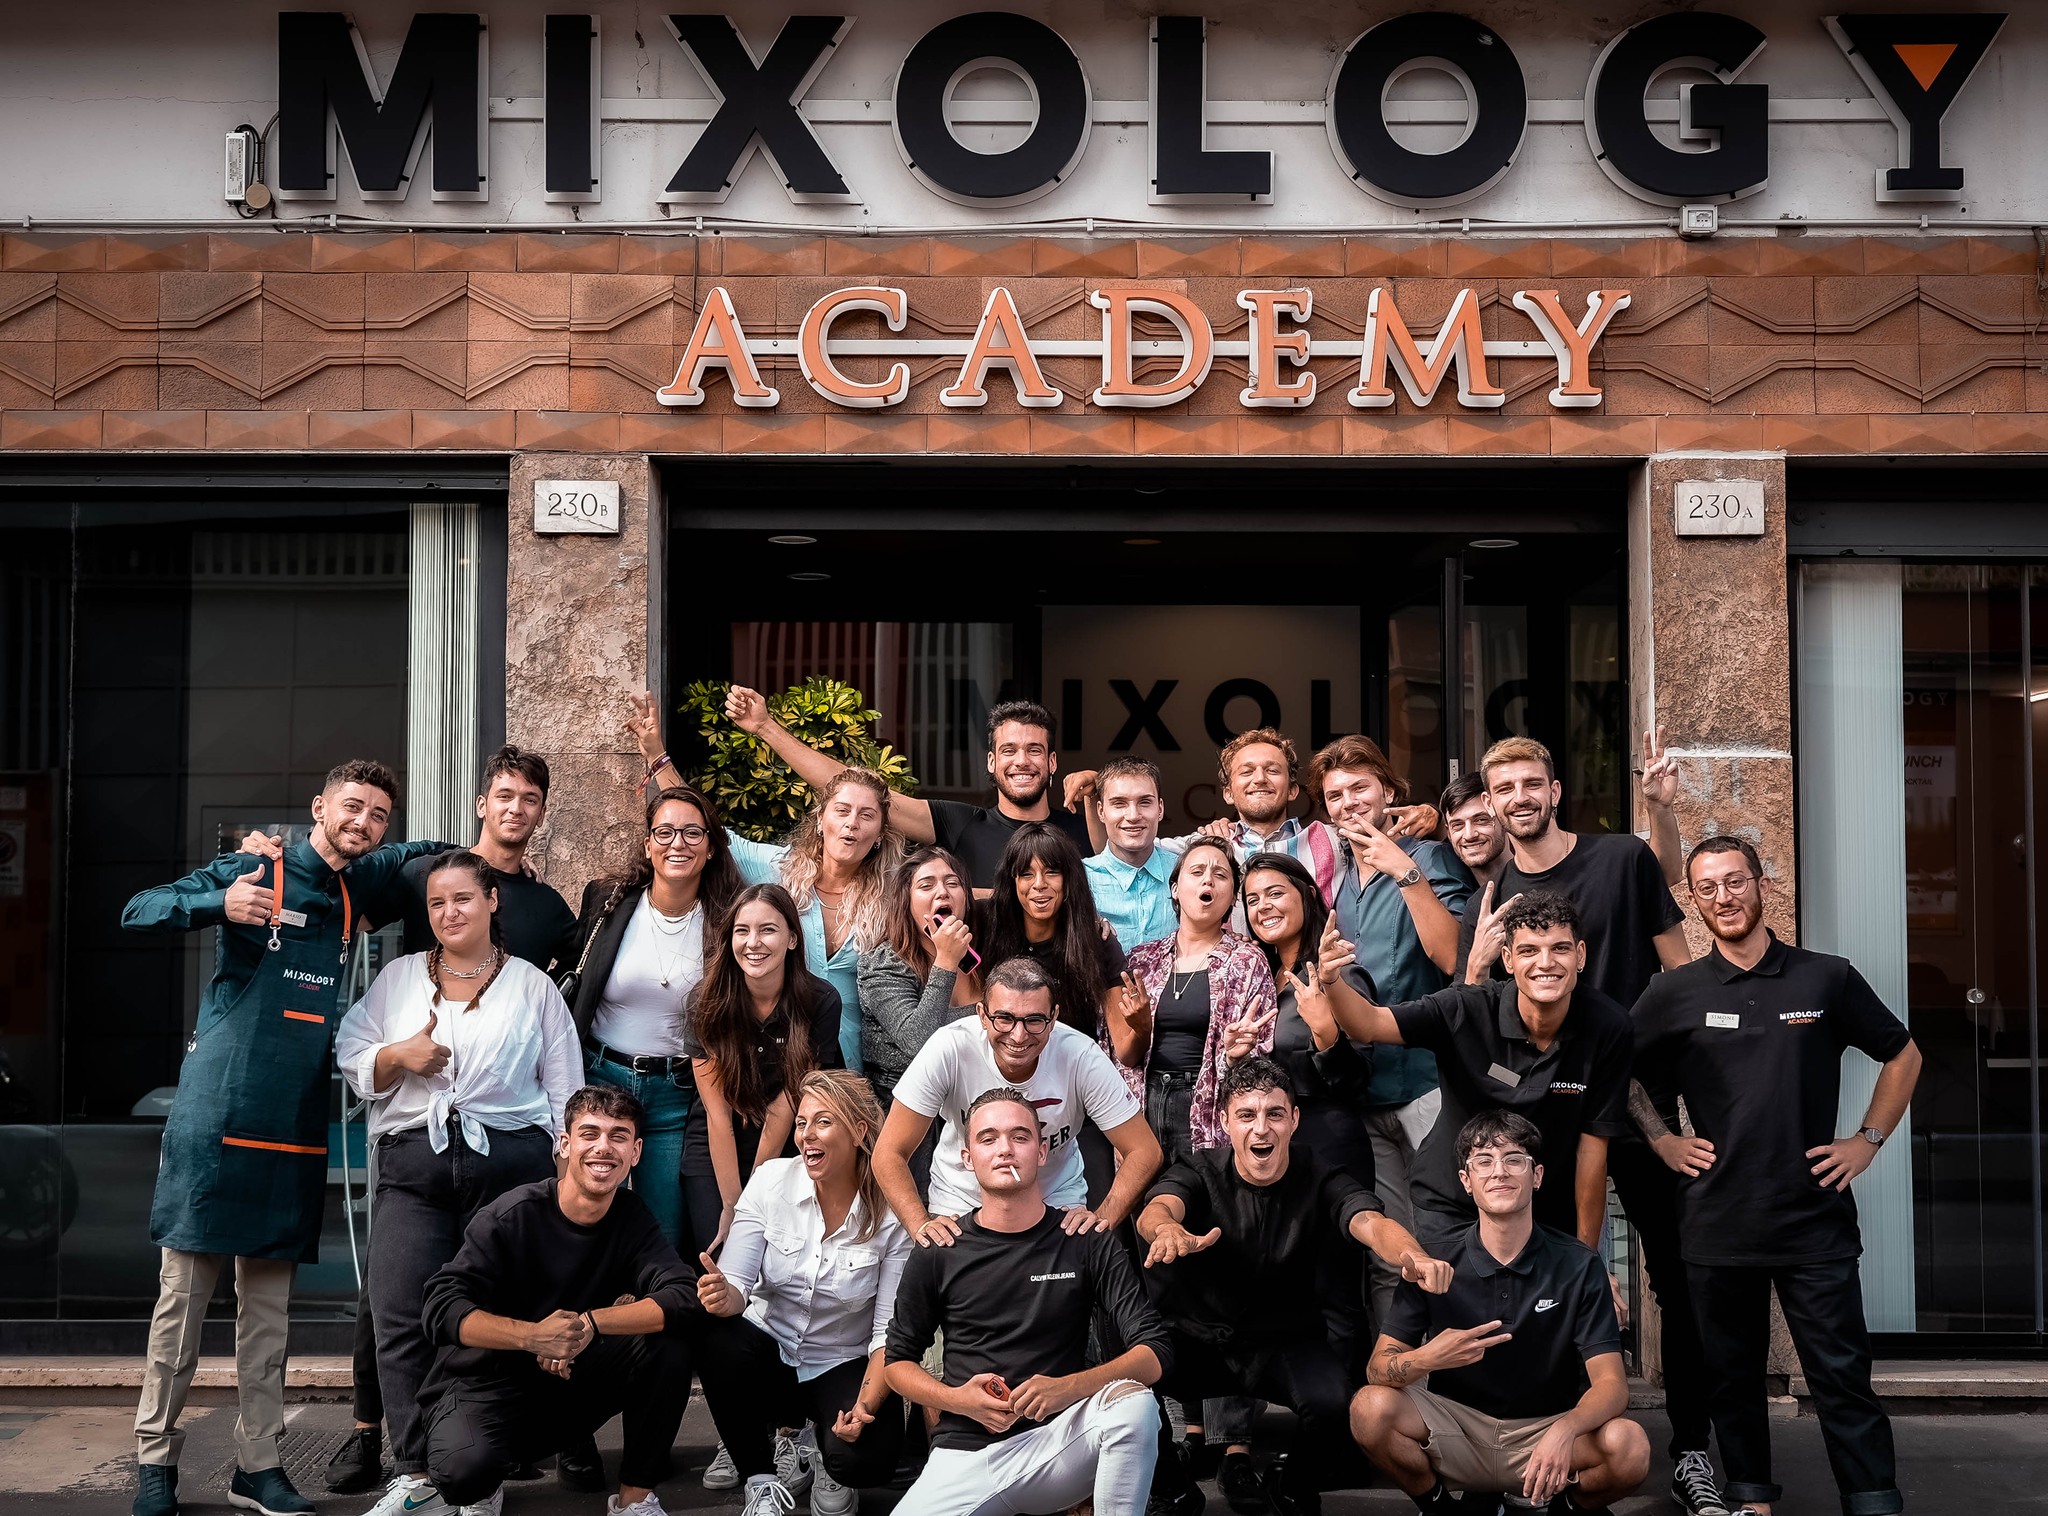 MIXOLOGY Academy